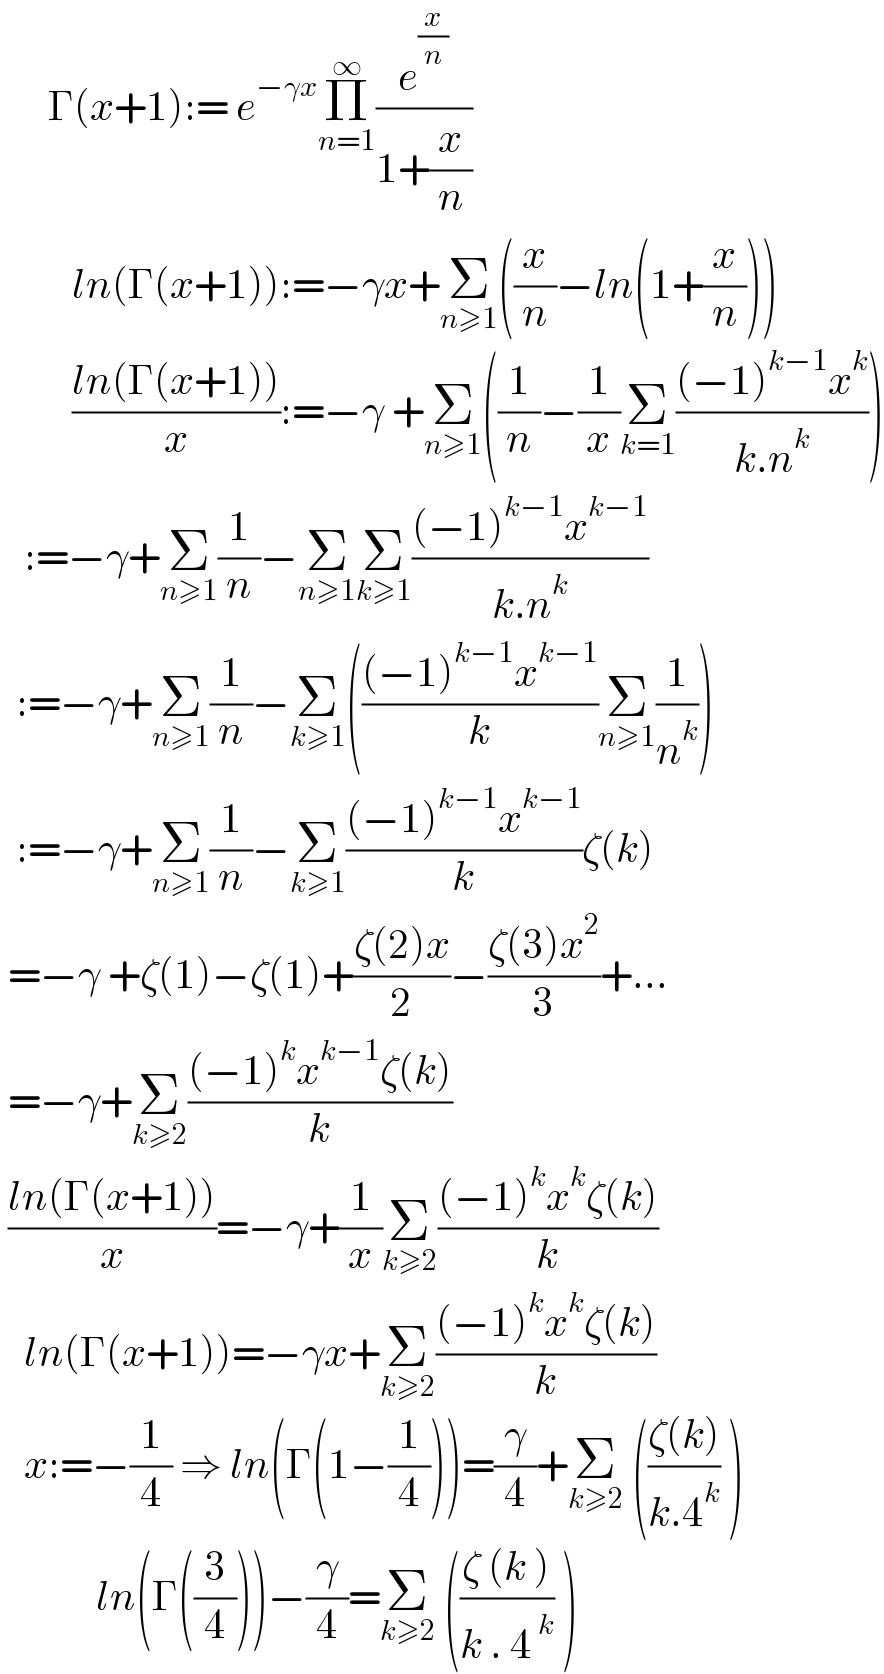       Γ(x+1):= e^(−γx) Π_(n=1) ^∞ (e^(x/n) /(1+(x/n)))           ln(Γ(x+1)):=−γx+Σ_(n≥1) ((x/n)−ln(1+(x/n)))           ((ln(Γ(x+1)))/x):=−γ +Σ_(n≥1) ((1/n)−(1/x)Σ_(k=1) (((−1)^(k−1) x^k )/(k.n^k )))     :=−γ+Σ_(n≥1) (1/n)−Σ_(n≥1) Σ_(k≥1) (((−1)^(k−1) x^(k−1) )/(k.n^k ))    :=−γ+Σ_(n≥1) (1/n)−Σ_(k≥1) ((((−1)^(k−1) x^(k−1) )/k)Σ_(n≥1) (1/n^k ))    :=−γ+Σ_(n≥1) (1/n)−Σ_(k≥1) (((−1)^(k−1) x^(k−1) )/k)ζ(k)   =−γ +ζ(1)−ζ(1)+((ζ(2)x)/2)−((ζ(3)x^2 )/3)+...   =−γ+Σ_(k≥2) (((−1)^k x^(k−1) ζ(k))/k)   ((ln(Γ(x+1)))/x)=−γ+(1/x)Σ_(k≥2) (((−1)^k x^k ζ(k))/k)     ln(Γ(x+1))=−γx+Σ_(k≥2) (((−1)^k x^k ζ(k))/k)     x:=−(1/4) ⇒ ln(Γ(1−(1/4)))=(γ/4)+Σ_(k≥2)  (((ζ(k))/(k.4^k )) )              ln(Γ((3/4)))−(γ/4)=Σ_(k≥2)  (((ζ (k ))/(k . 4^( k) )) )  